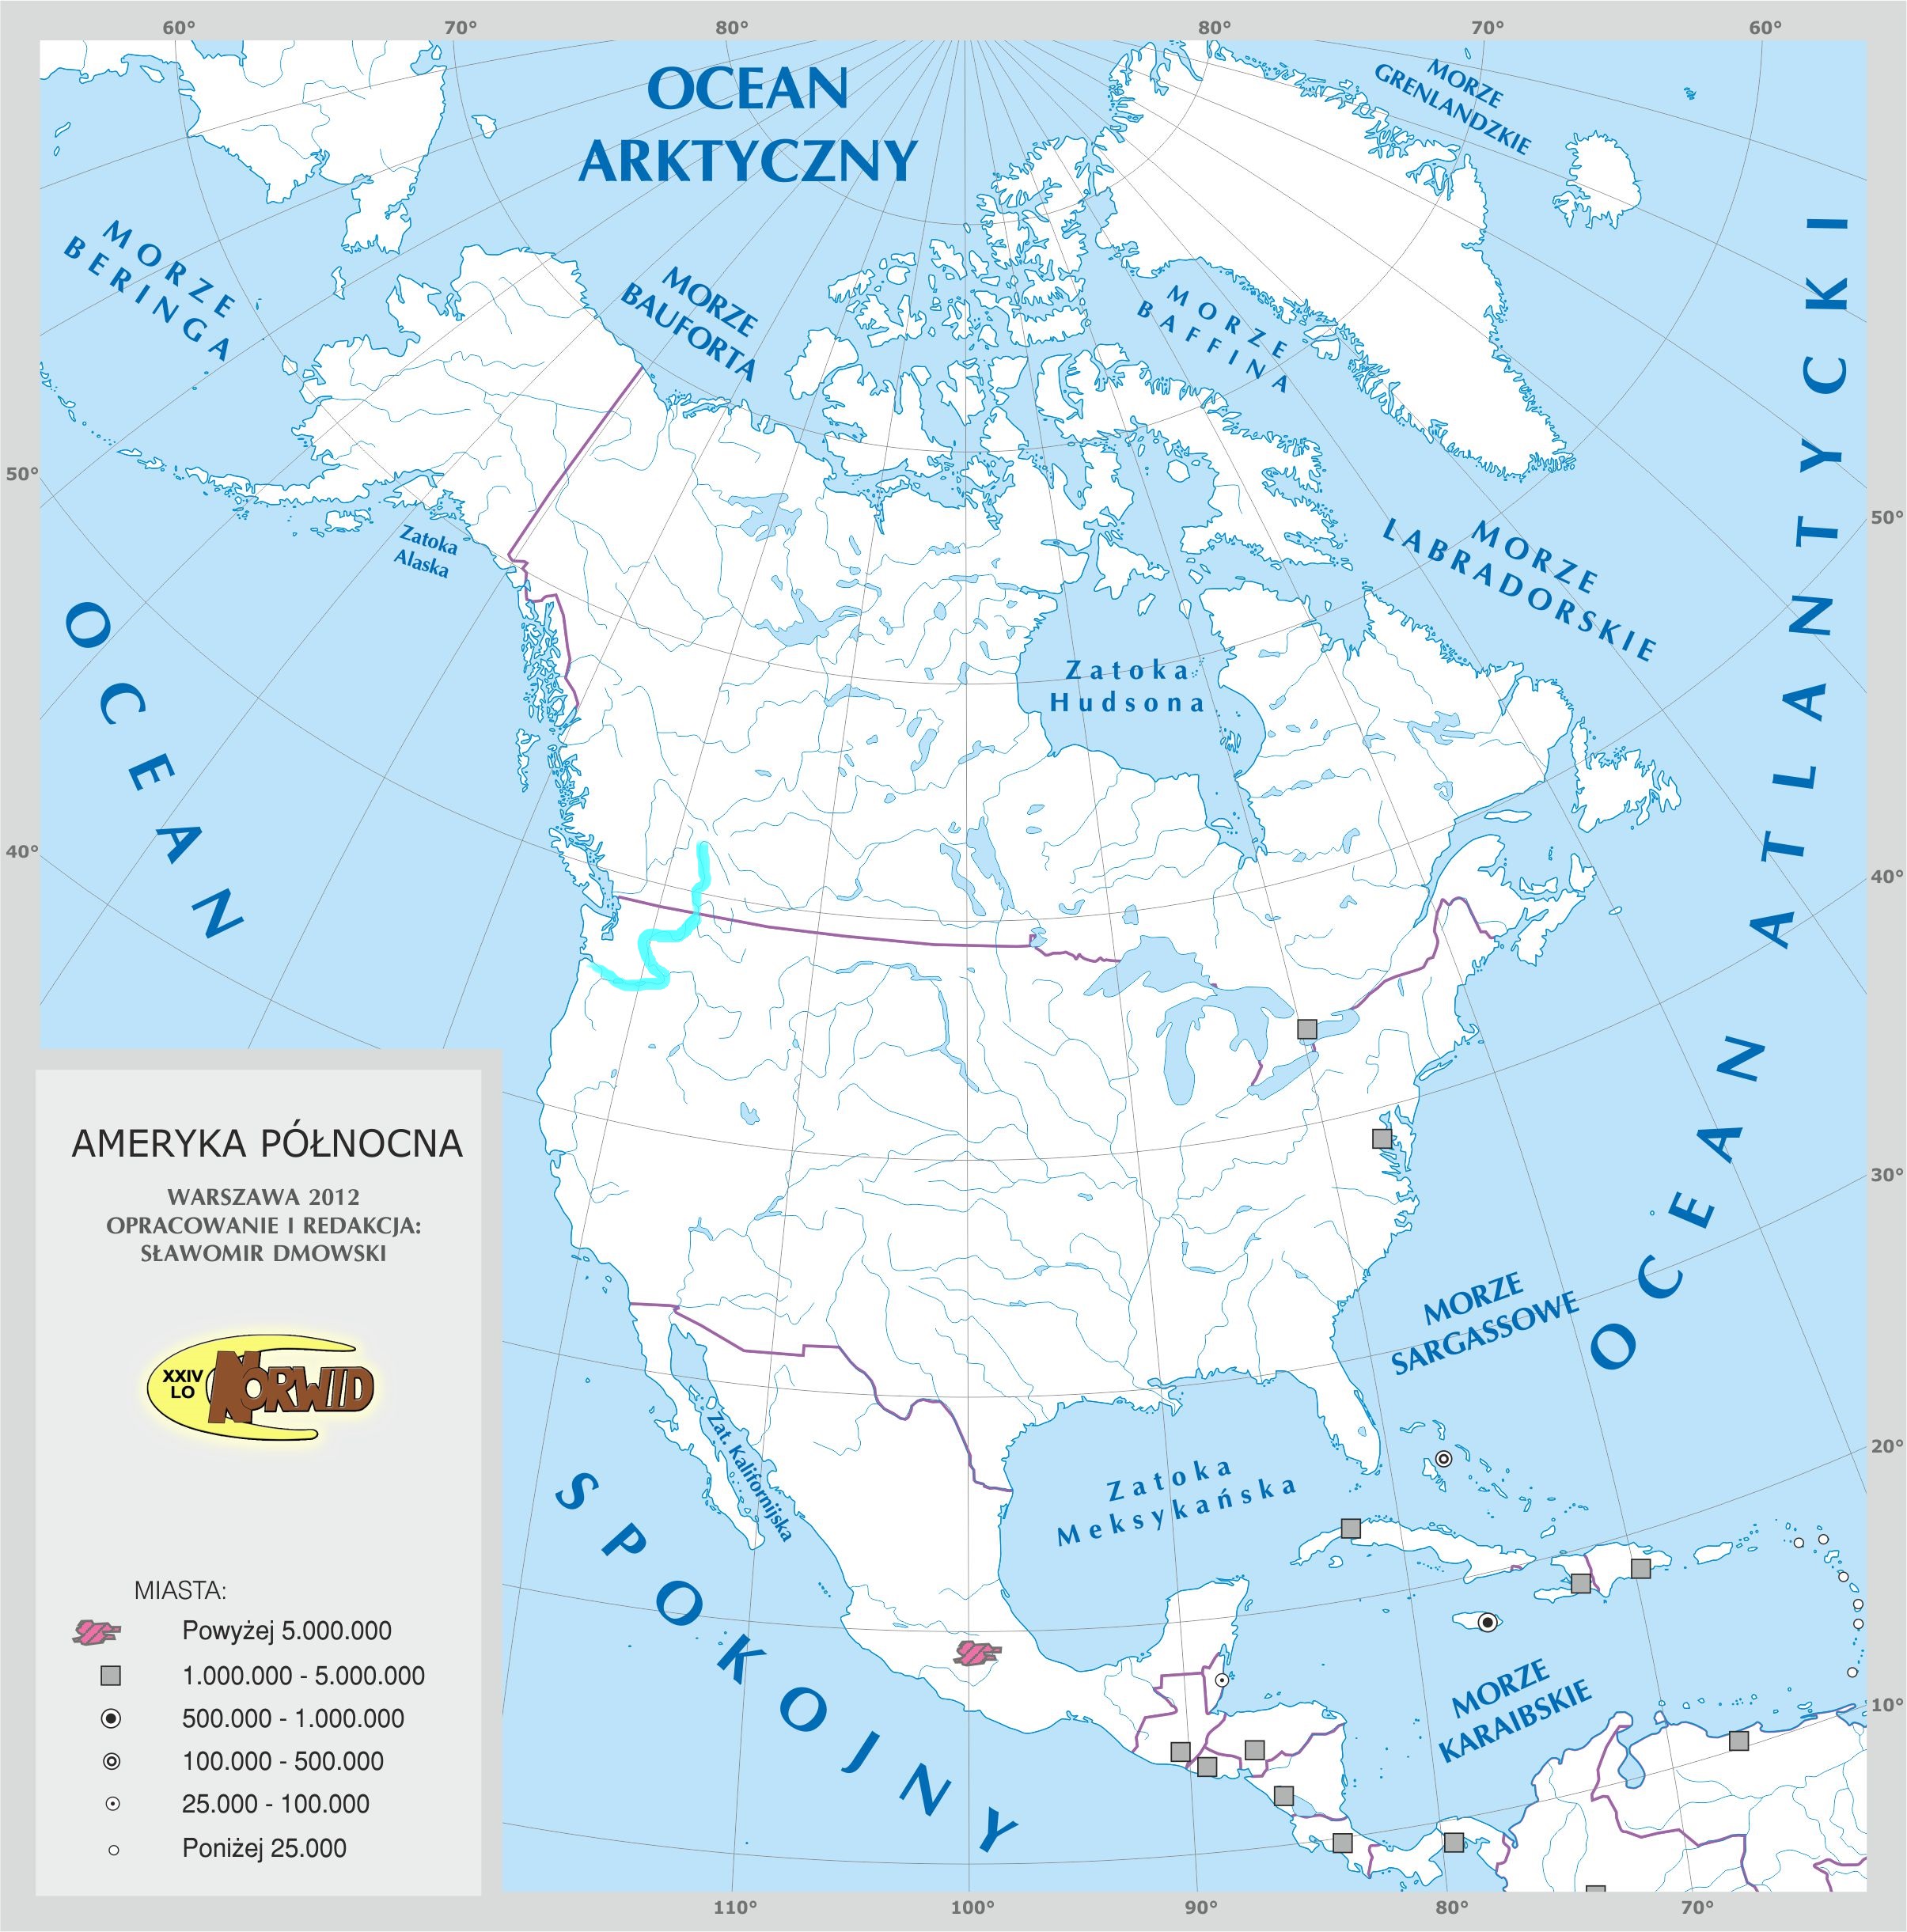 Sprawdzian Z Geografii Ameryka Północna I Południowa Level 13 - Ameryka Północna - Rzeki i Jeziora 1-25 - Mapa fizyczna świ